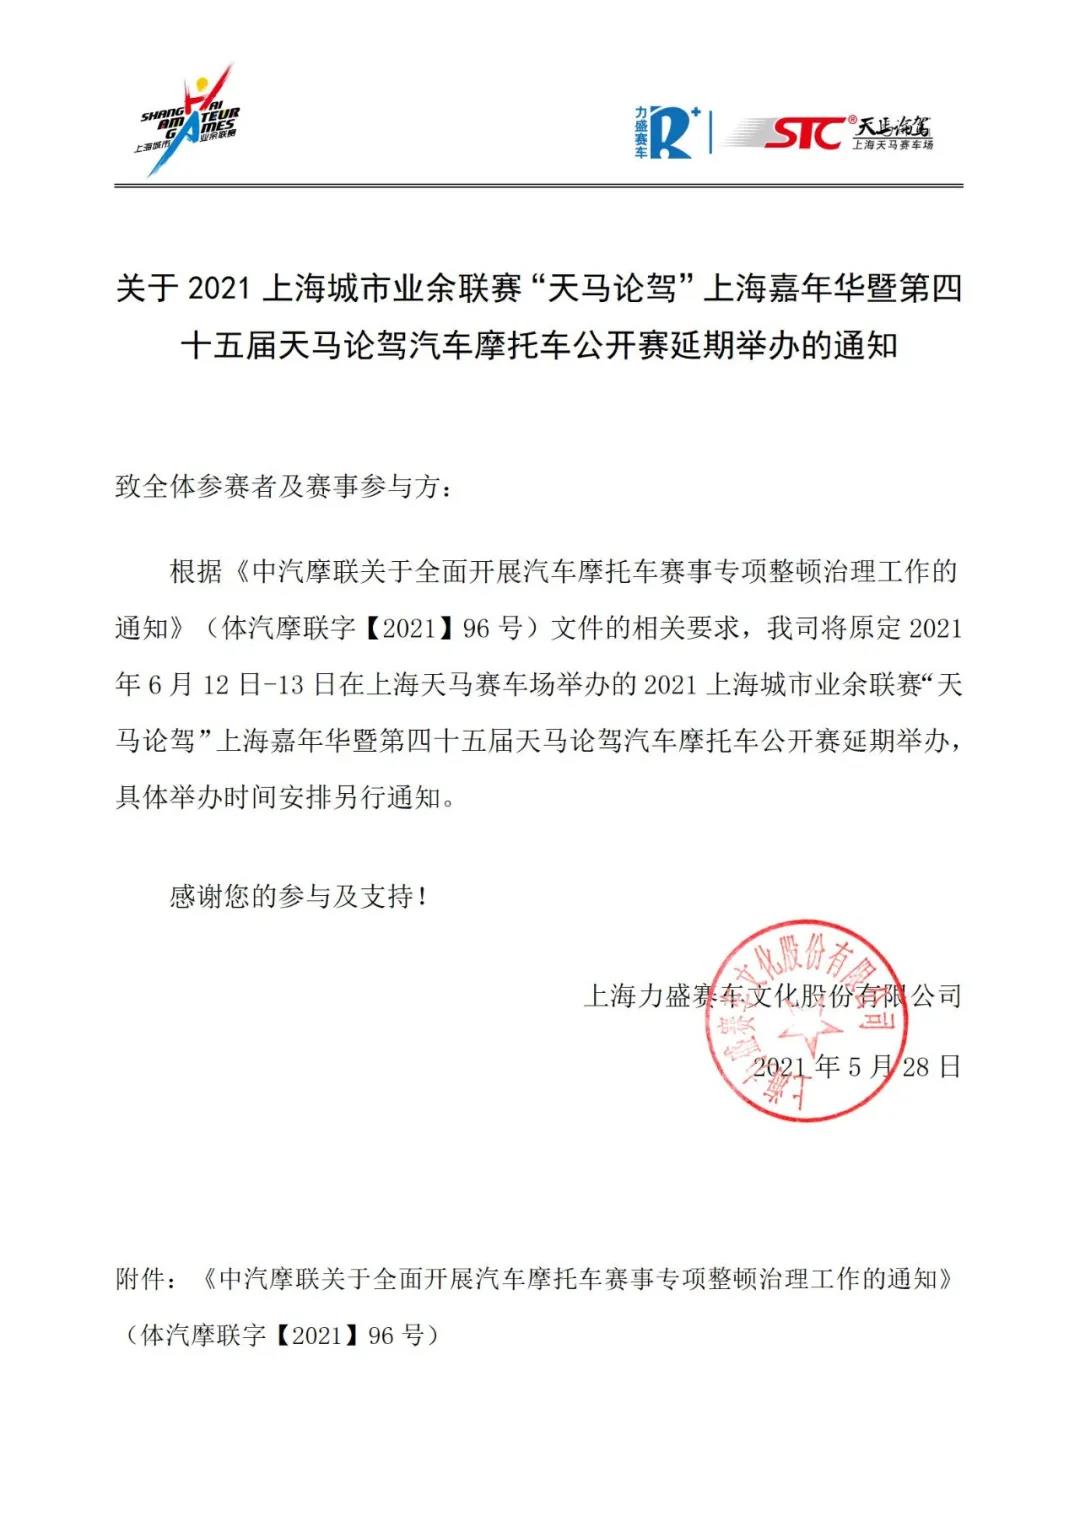 关于“天马论驾”上海嘉年华赛事延期举办的通知